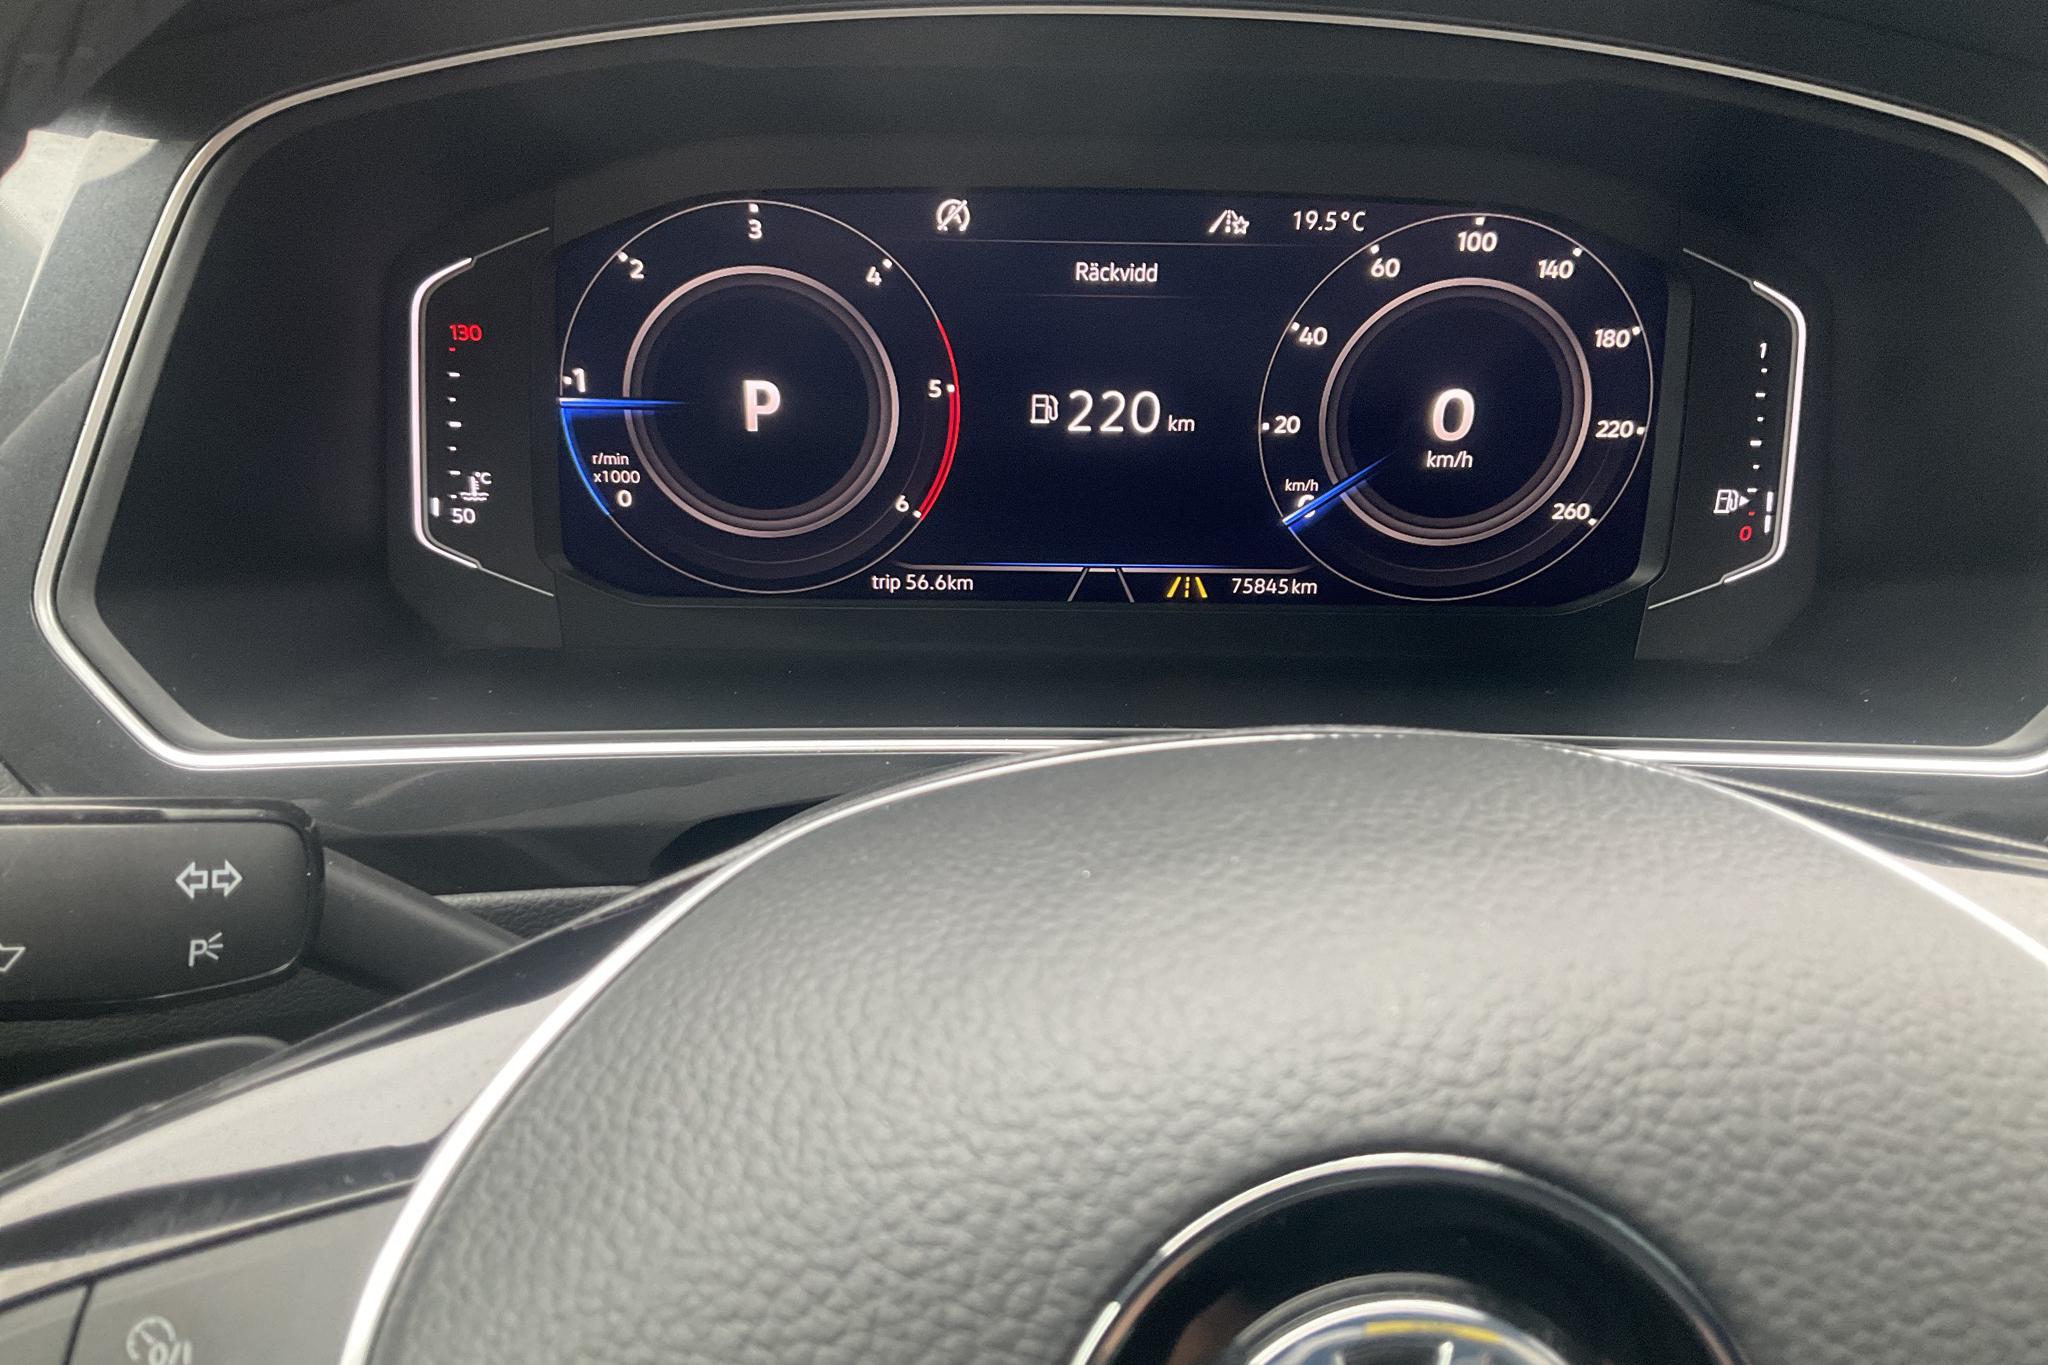 VW Tiguan 2.0 TDI 4MOTION (190hk) - 75 850 km - Automatic - gray - 2019